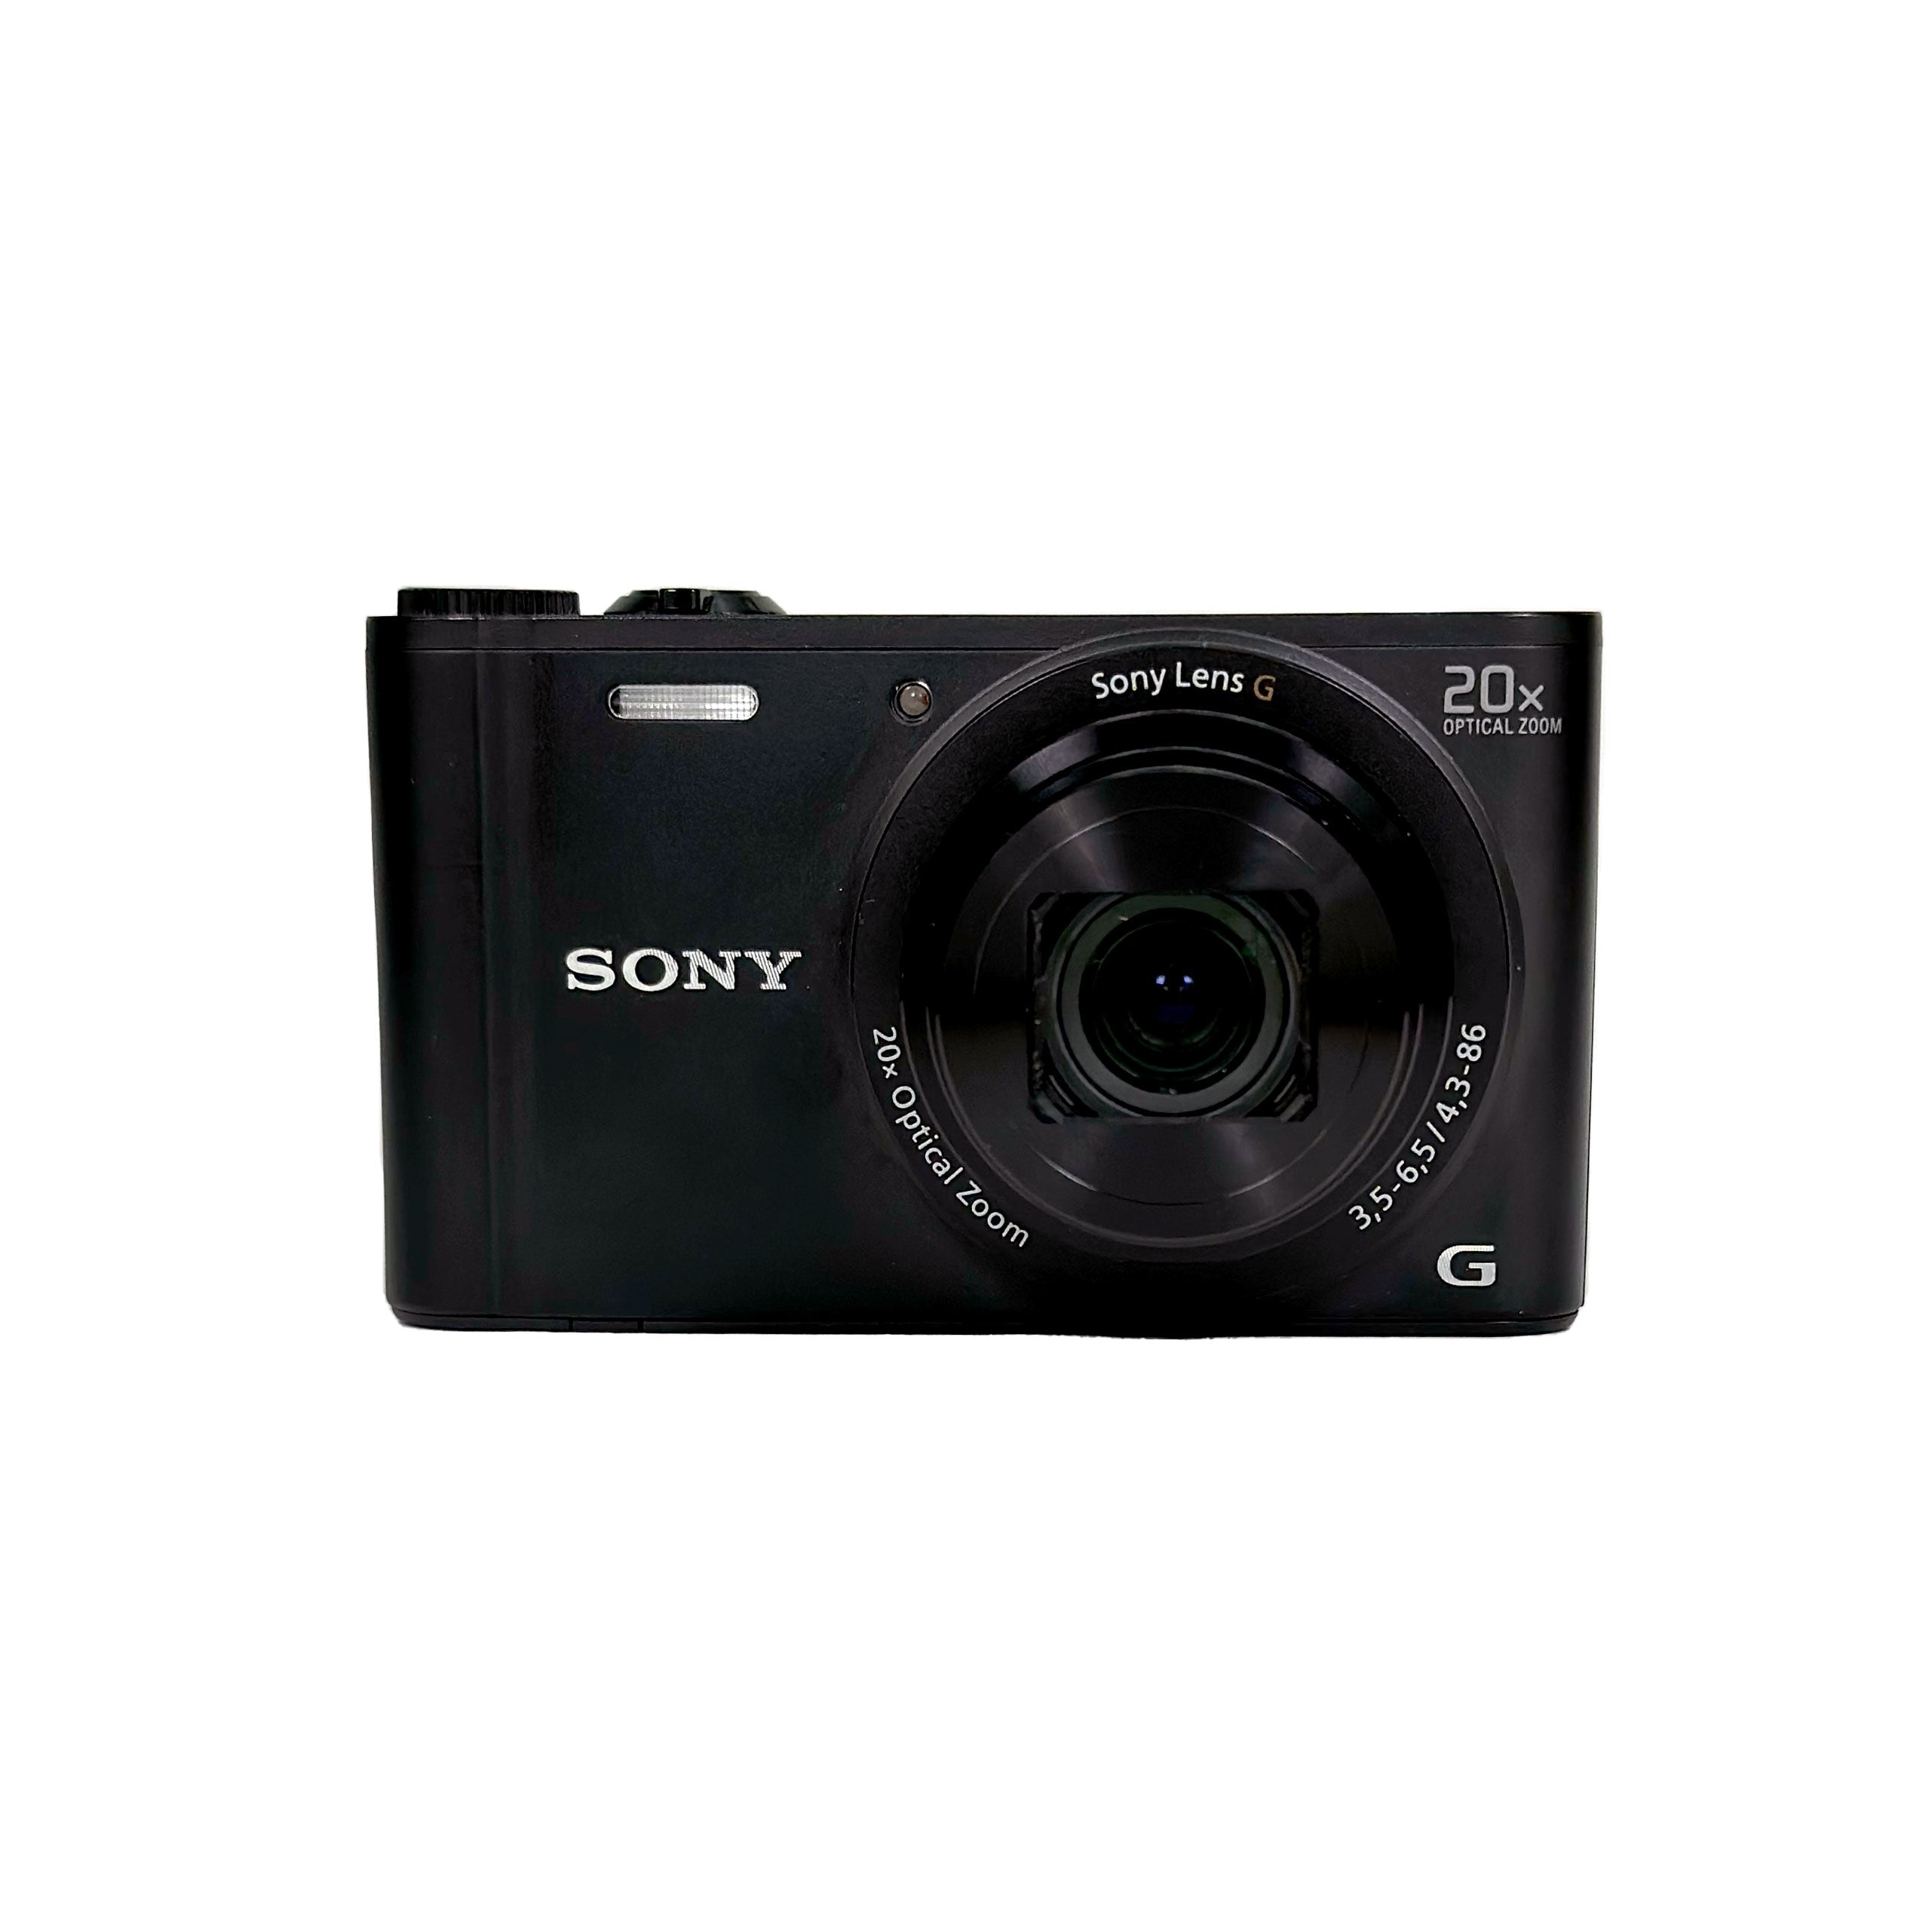 SONY Cyber-shot DSC-WX350 デジカメ200倍